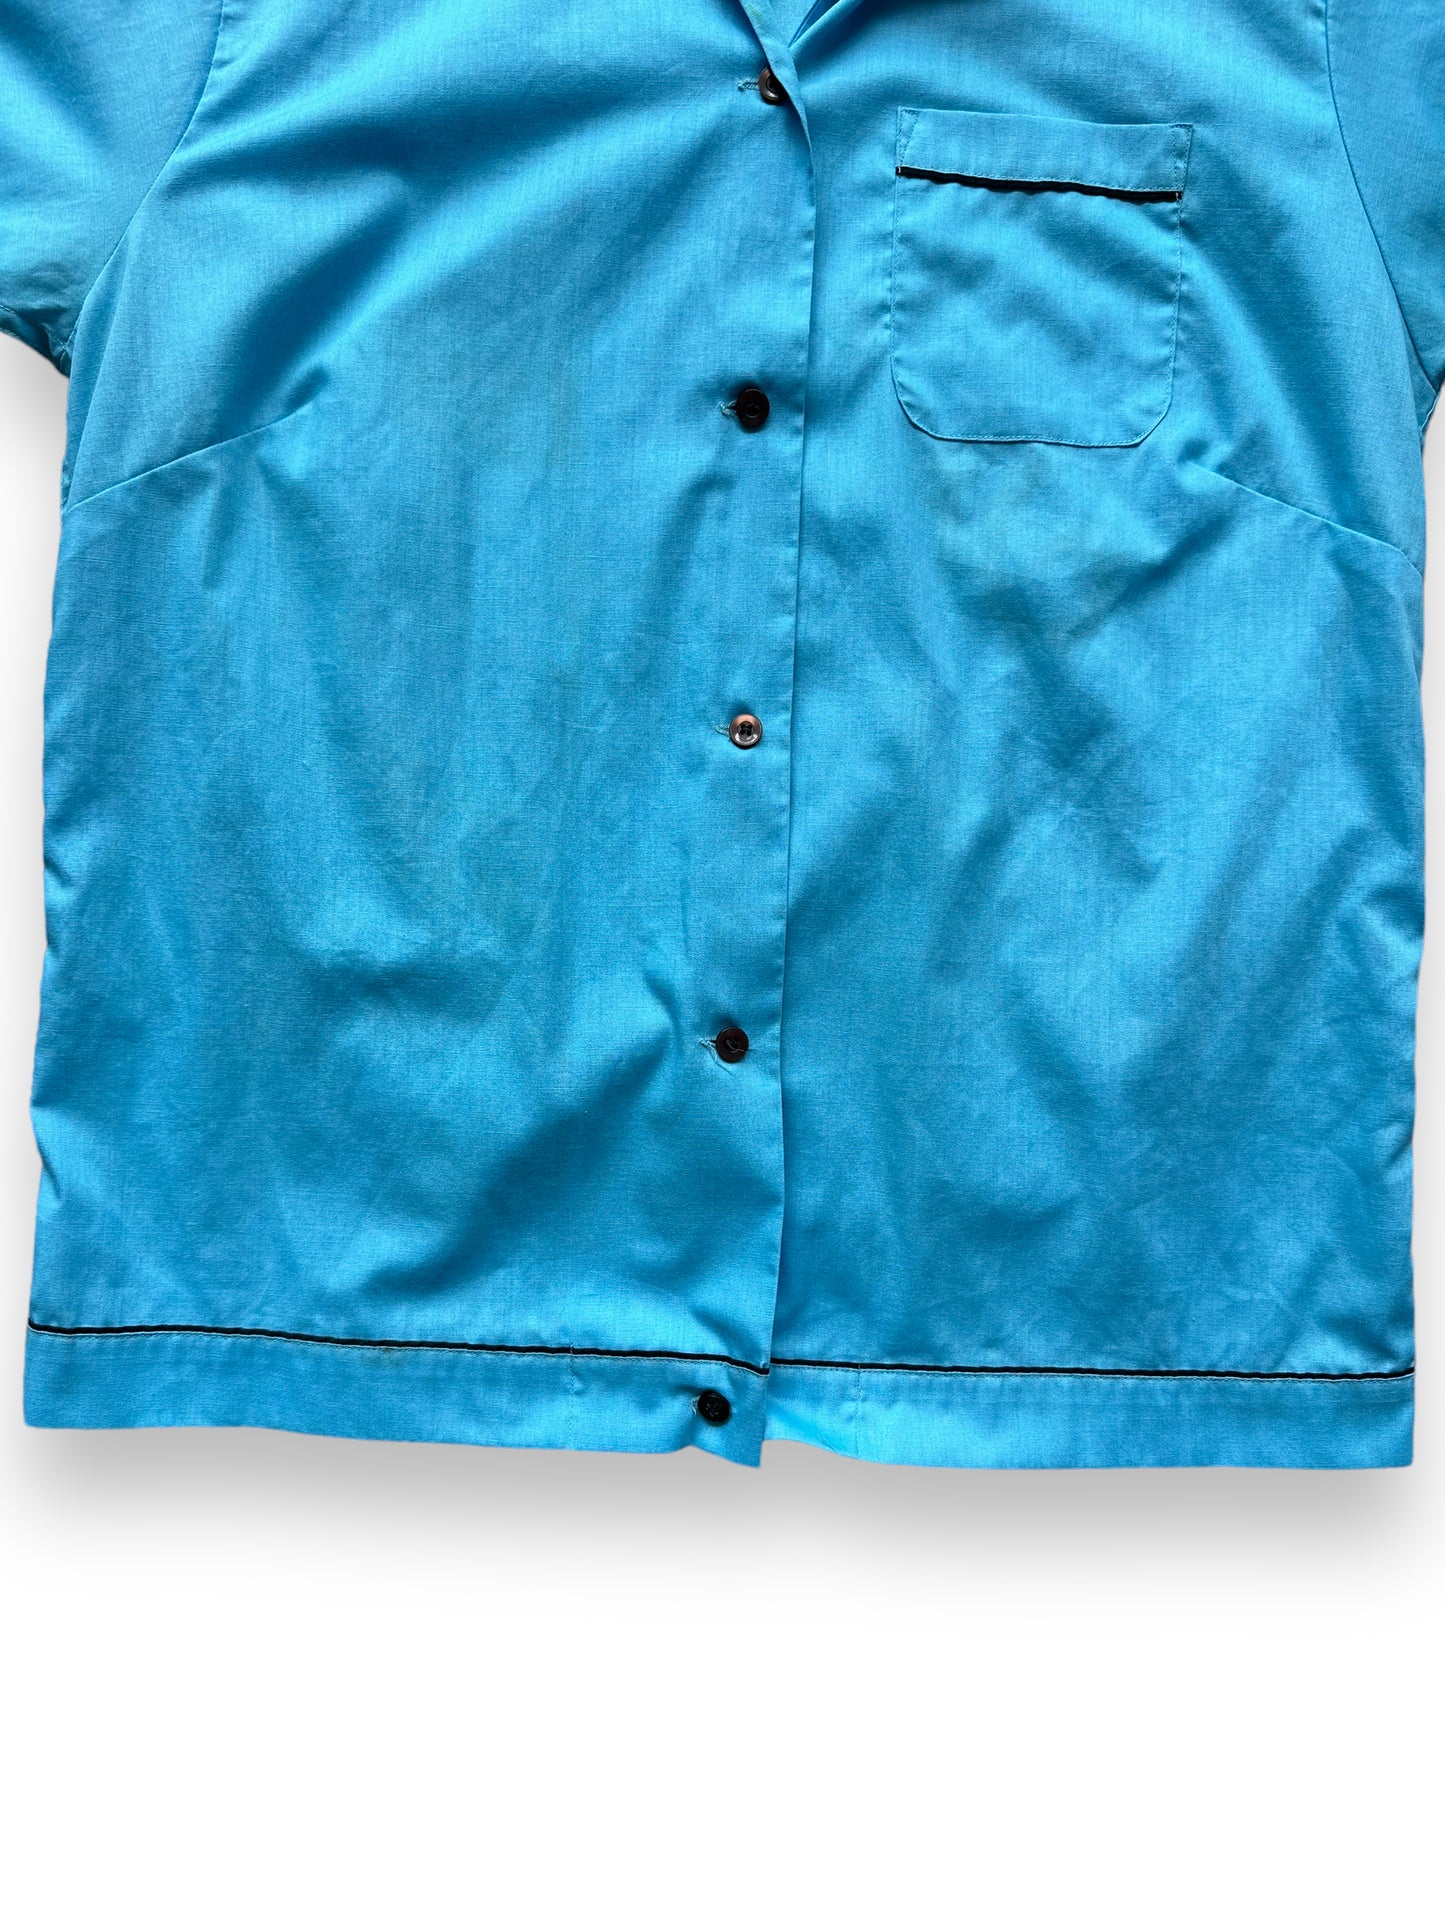 Bottom of Vintage "Shoreline High" Chainstitched Bowling Shirt SZ 36 | Vintage Bowling Shirt Seattle | Barn Owl Vintage Seattle